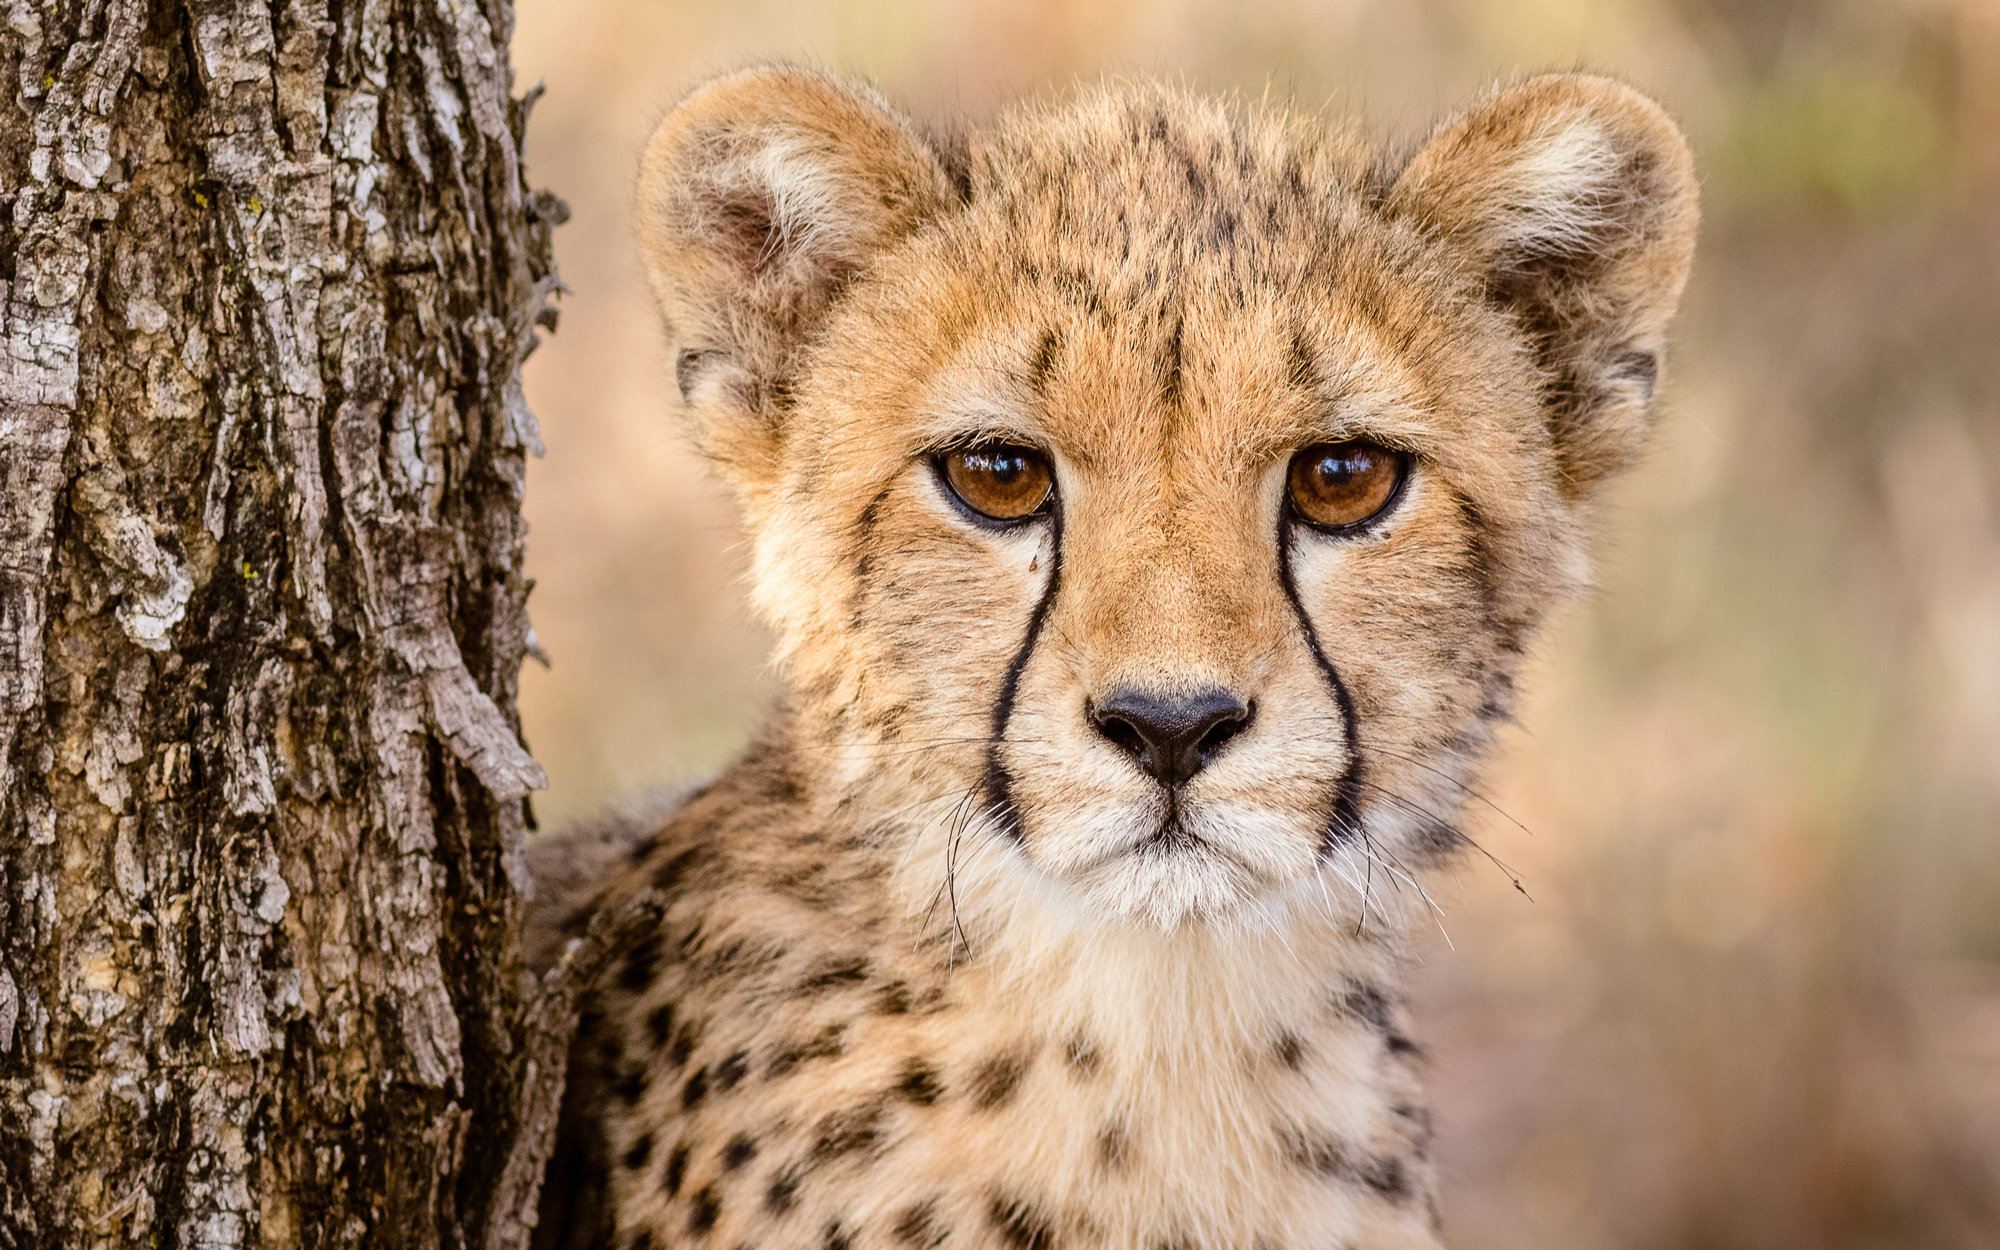 Young cheetah © Cal Butler